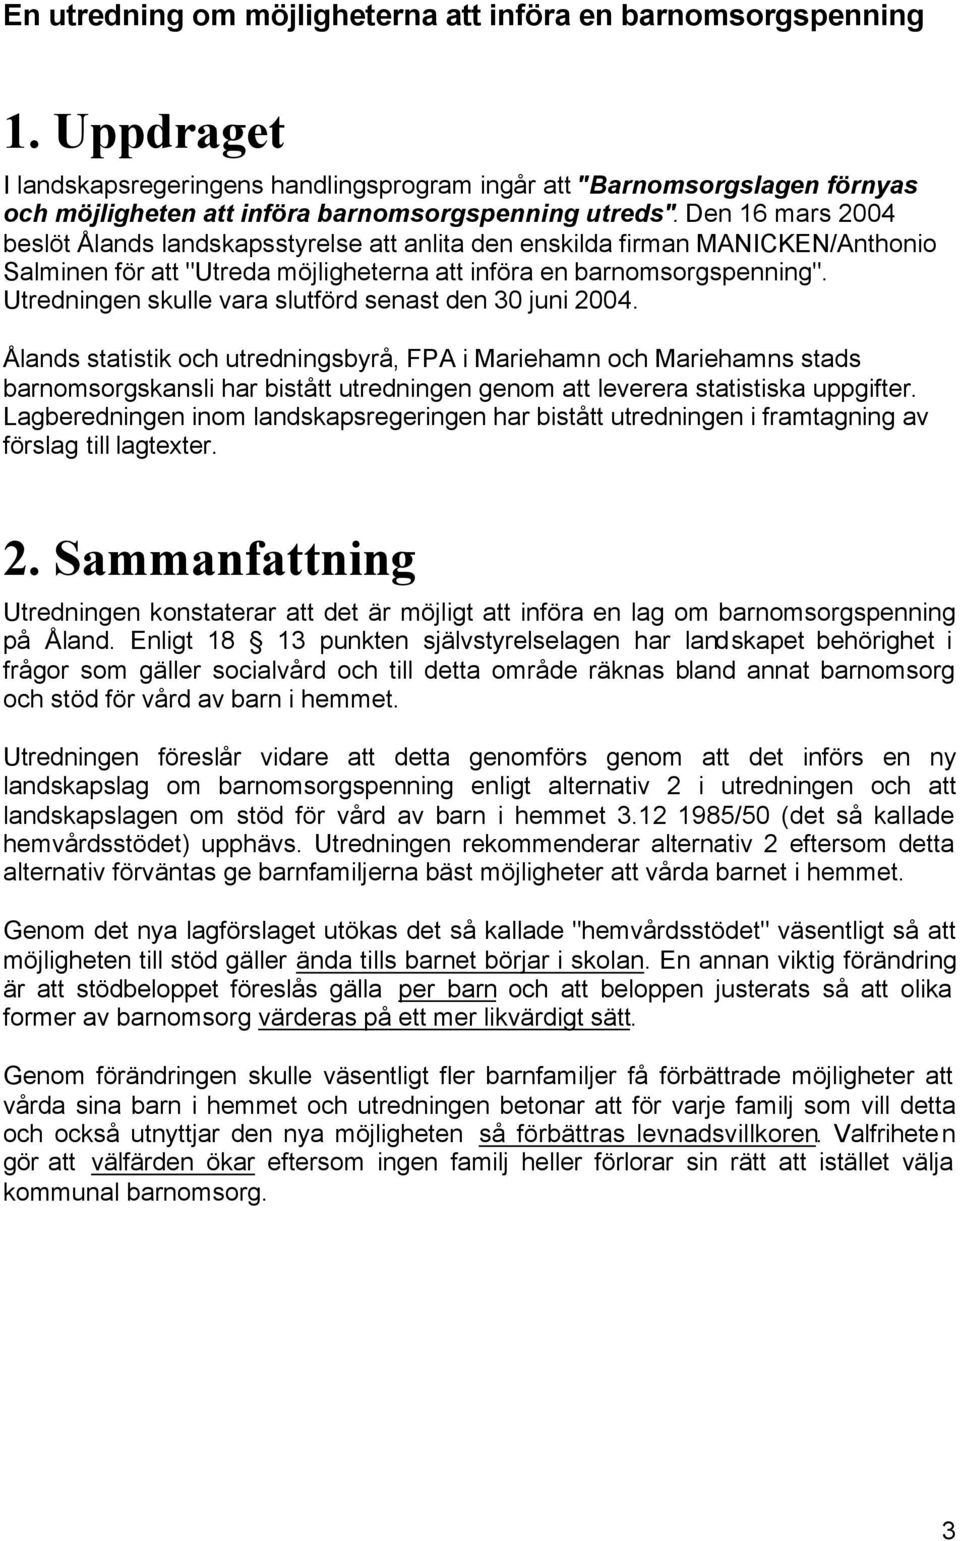 Den 16 mars 2004 beslöt Ålands landskapsstyrelse att anlita den enskilda firman MANICKEN/Anthonio Salminen för att "Utreda möjligheterna att införa en barnomsorgspenning".